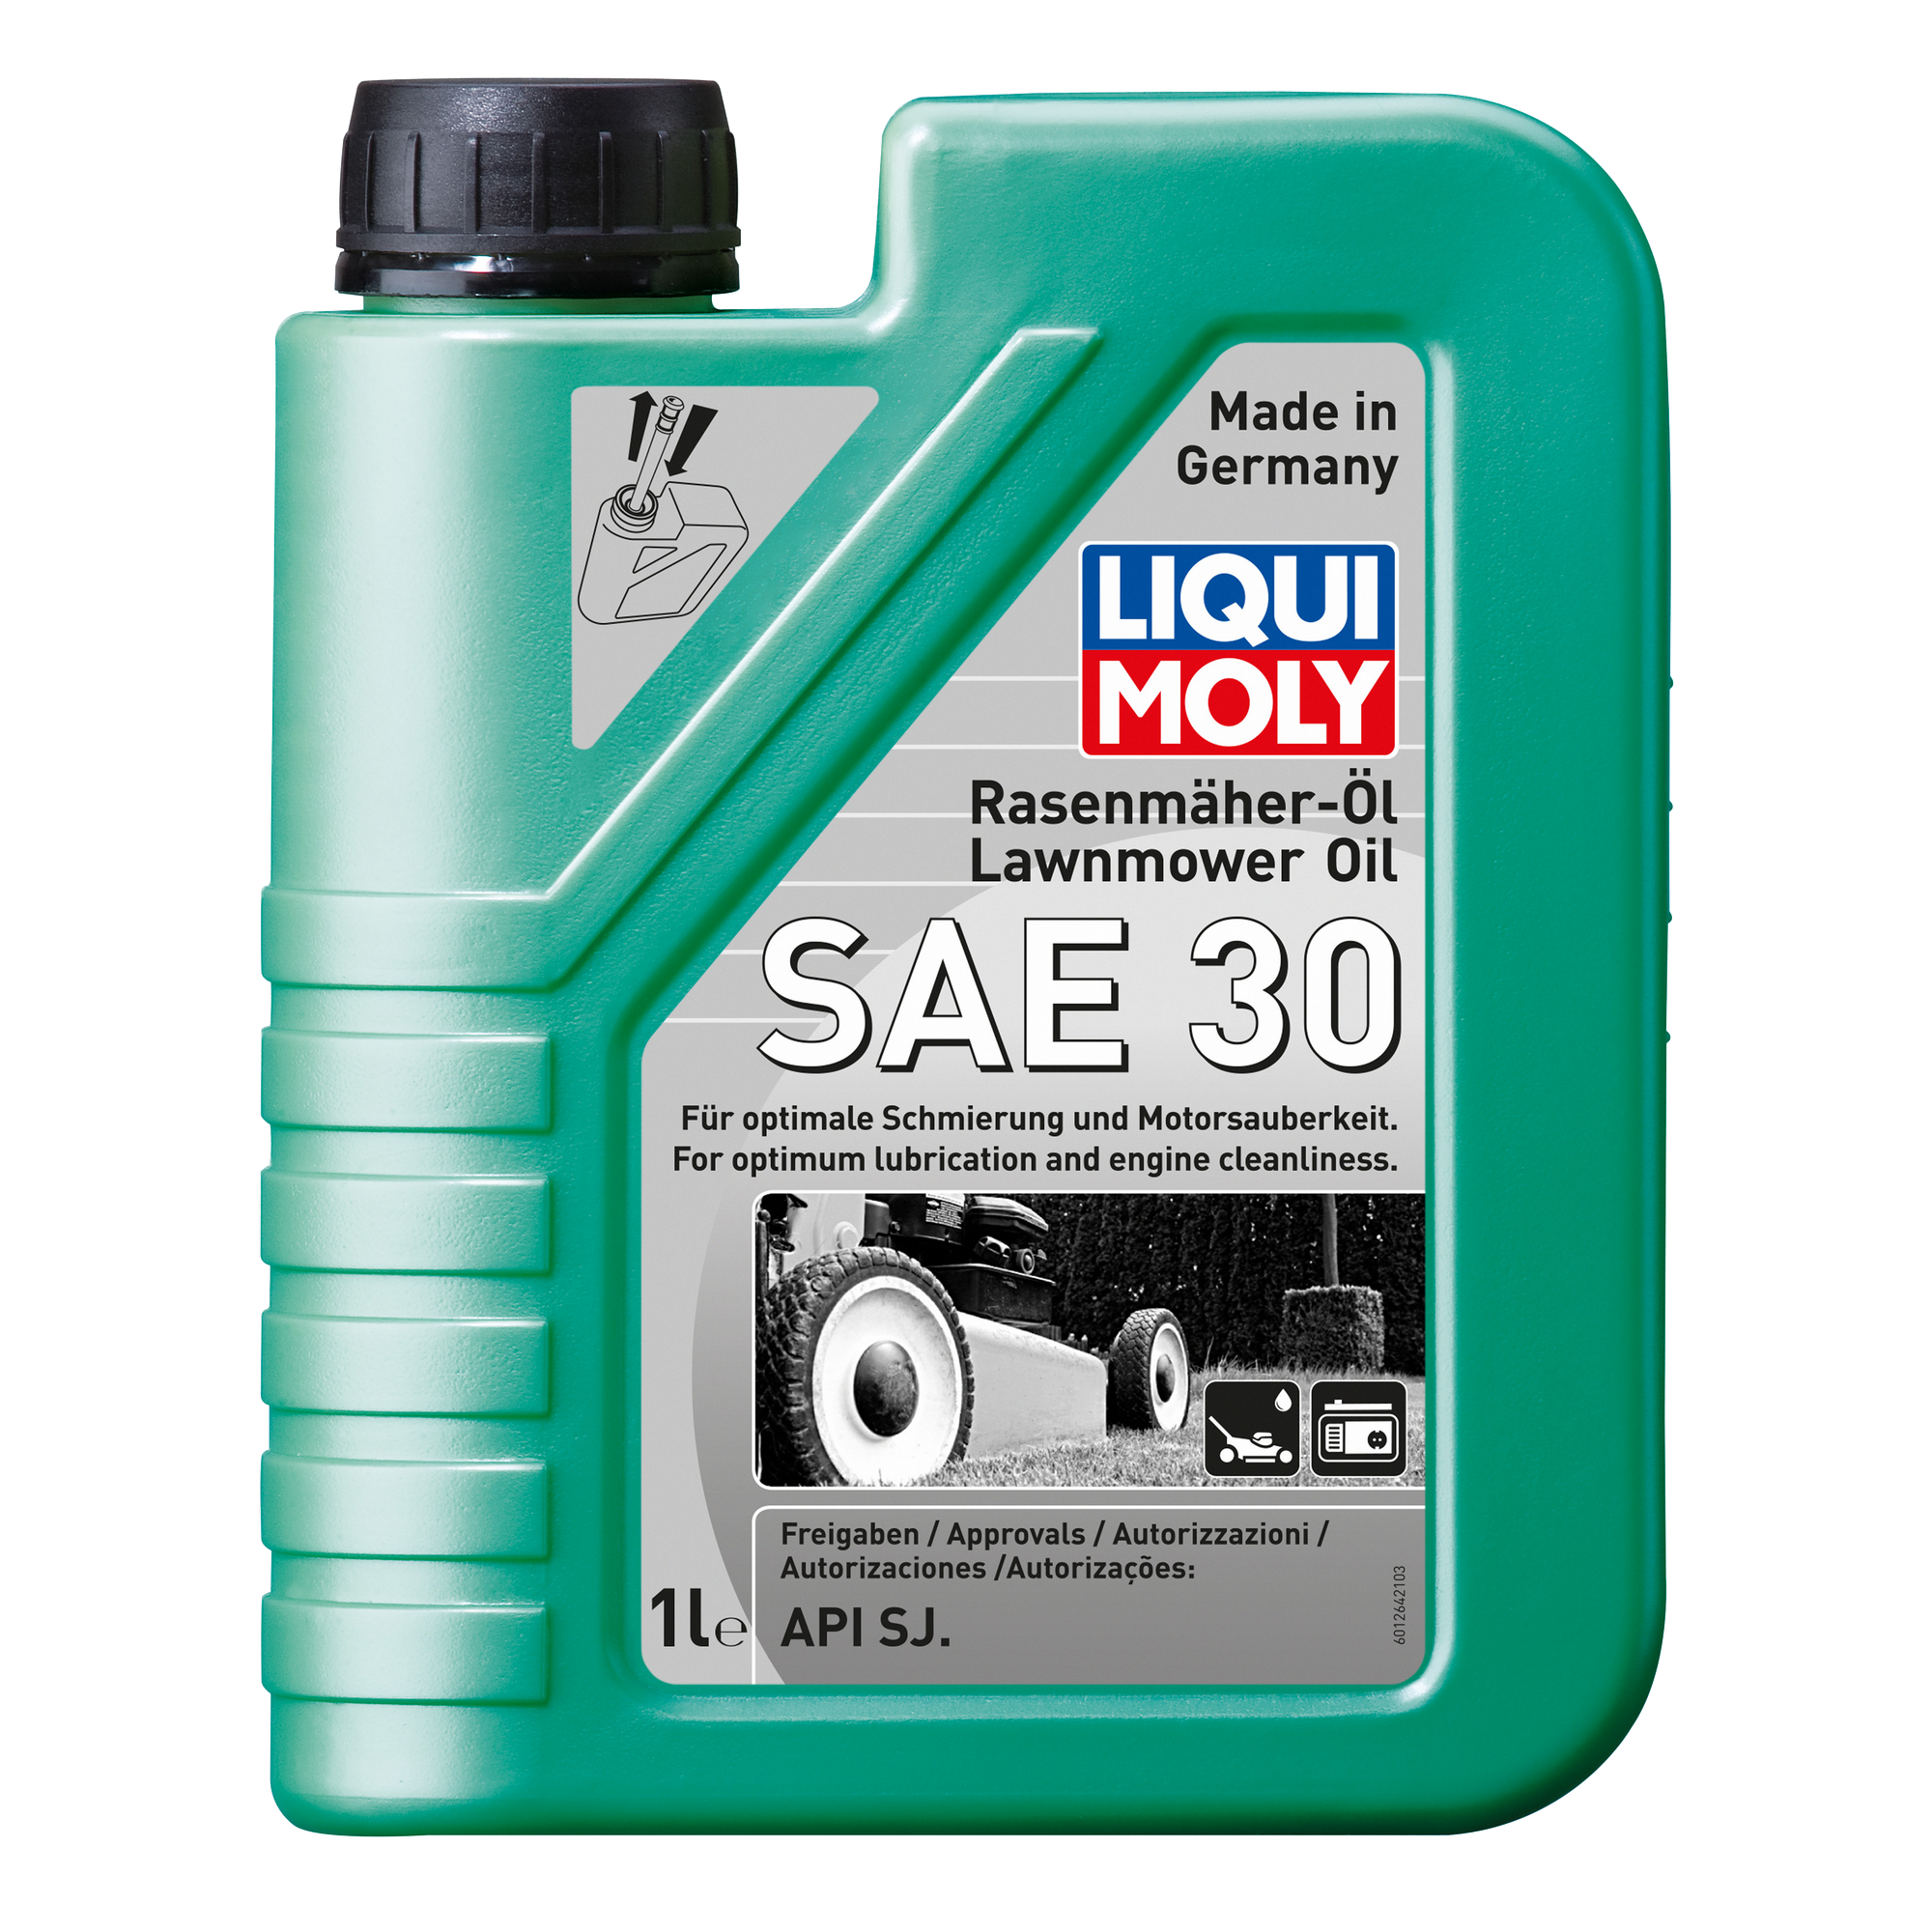 Einbereichs-Motoröl für Rasenmäher 'SAE 30' 1 l + product picture